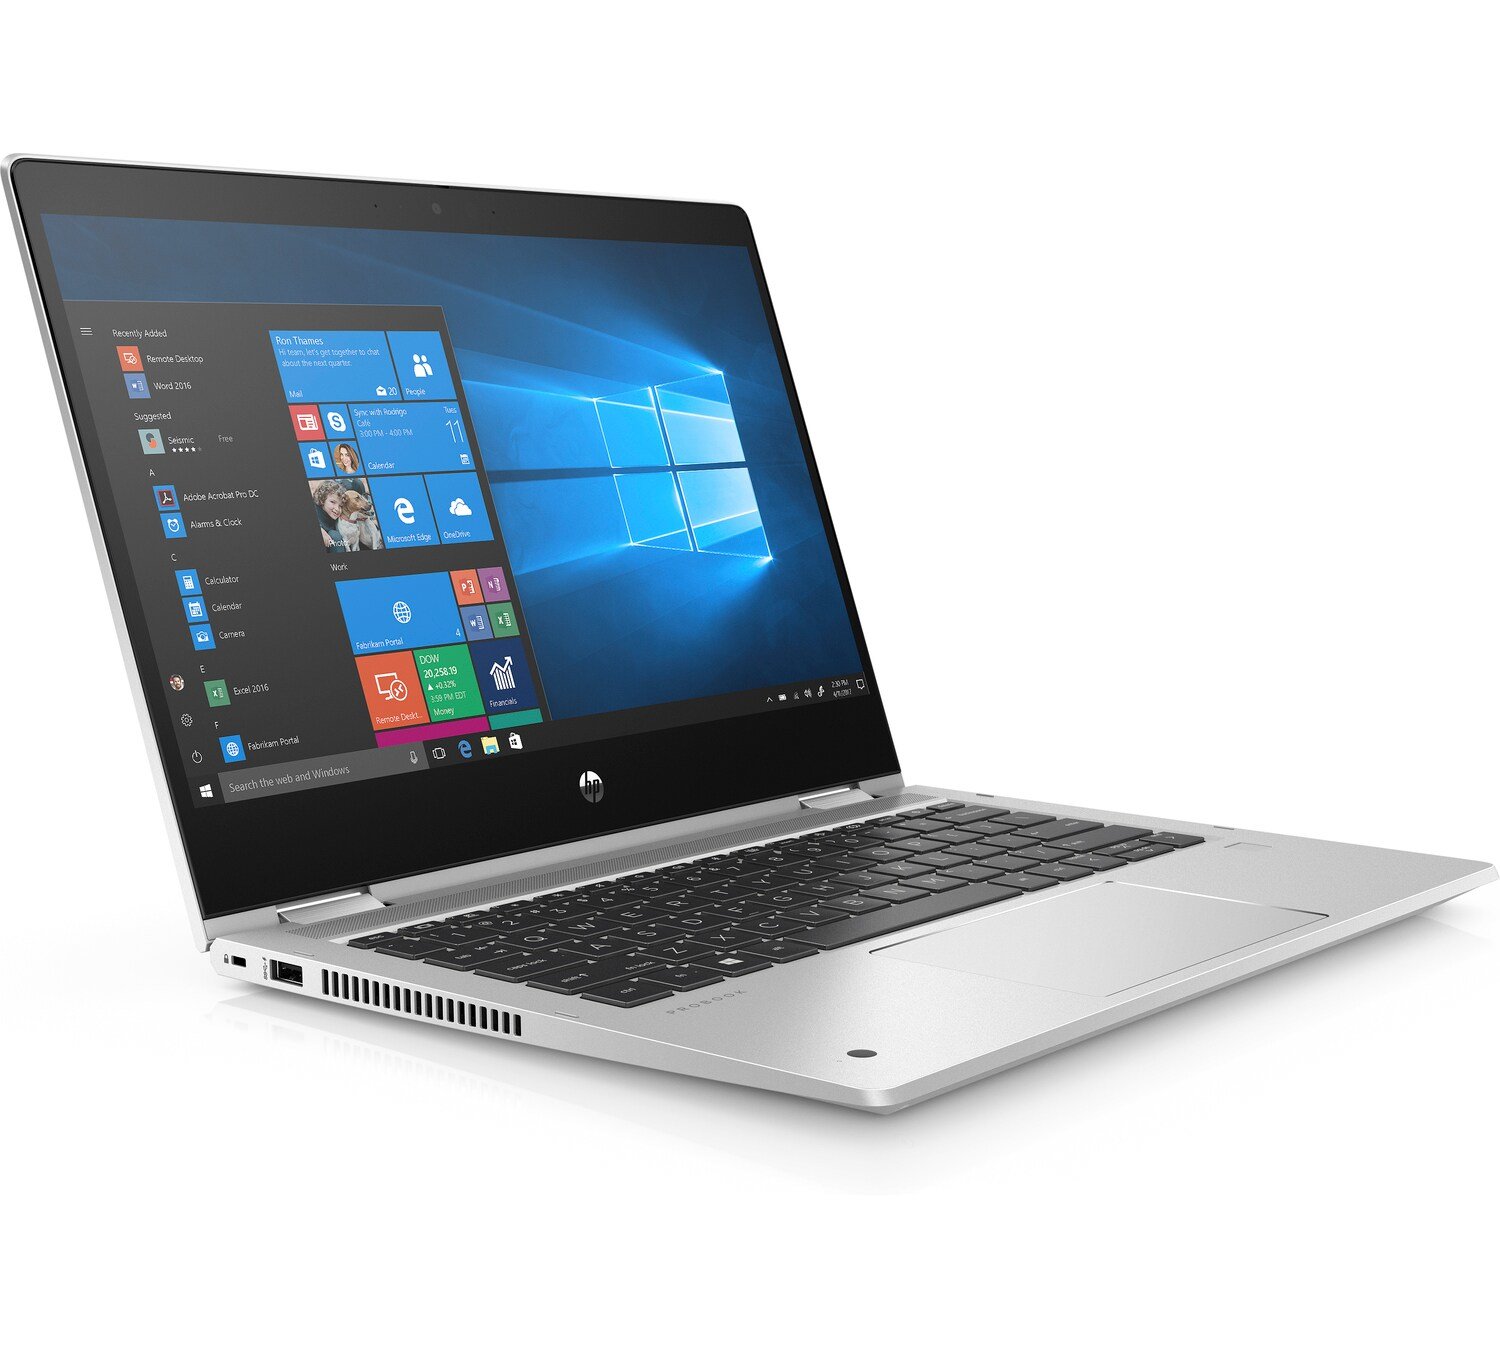 Notebook HP ProBook x360 435 G7 srebrny widok na ekran od prawego boku